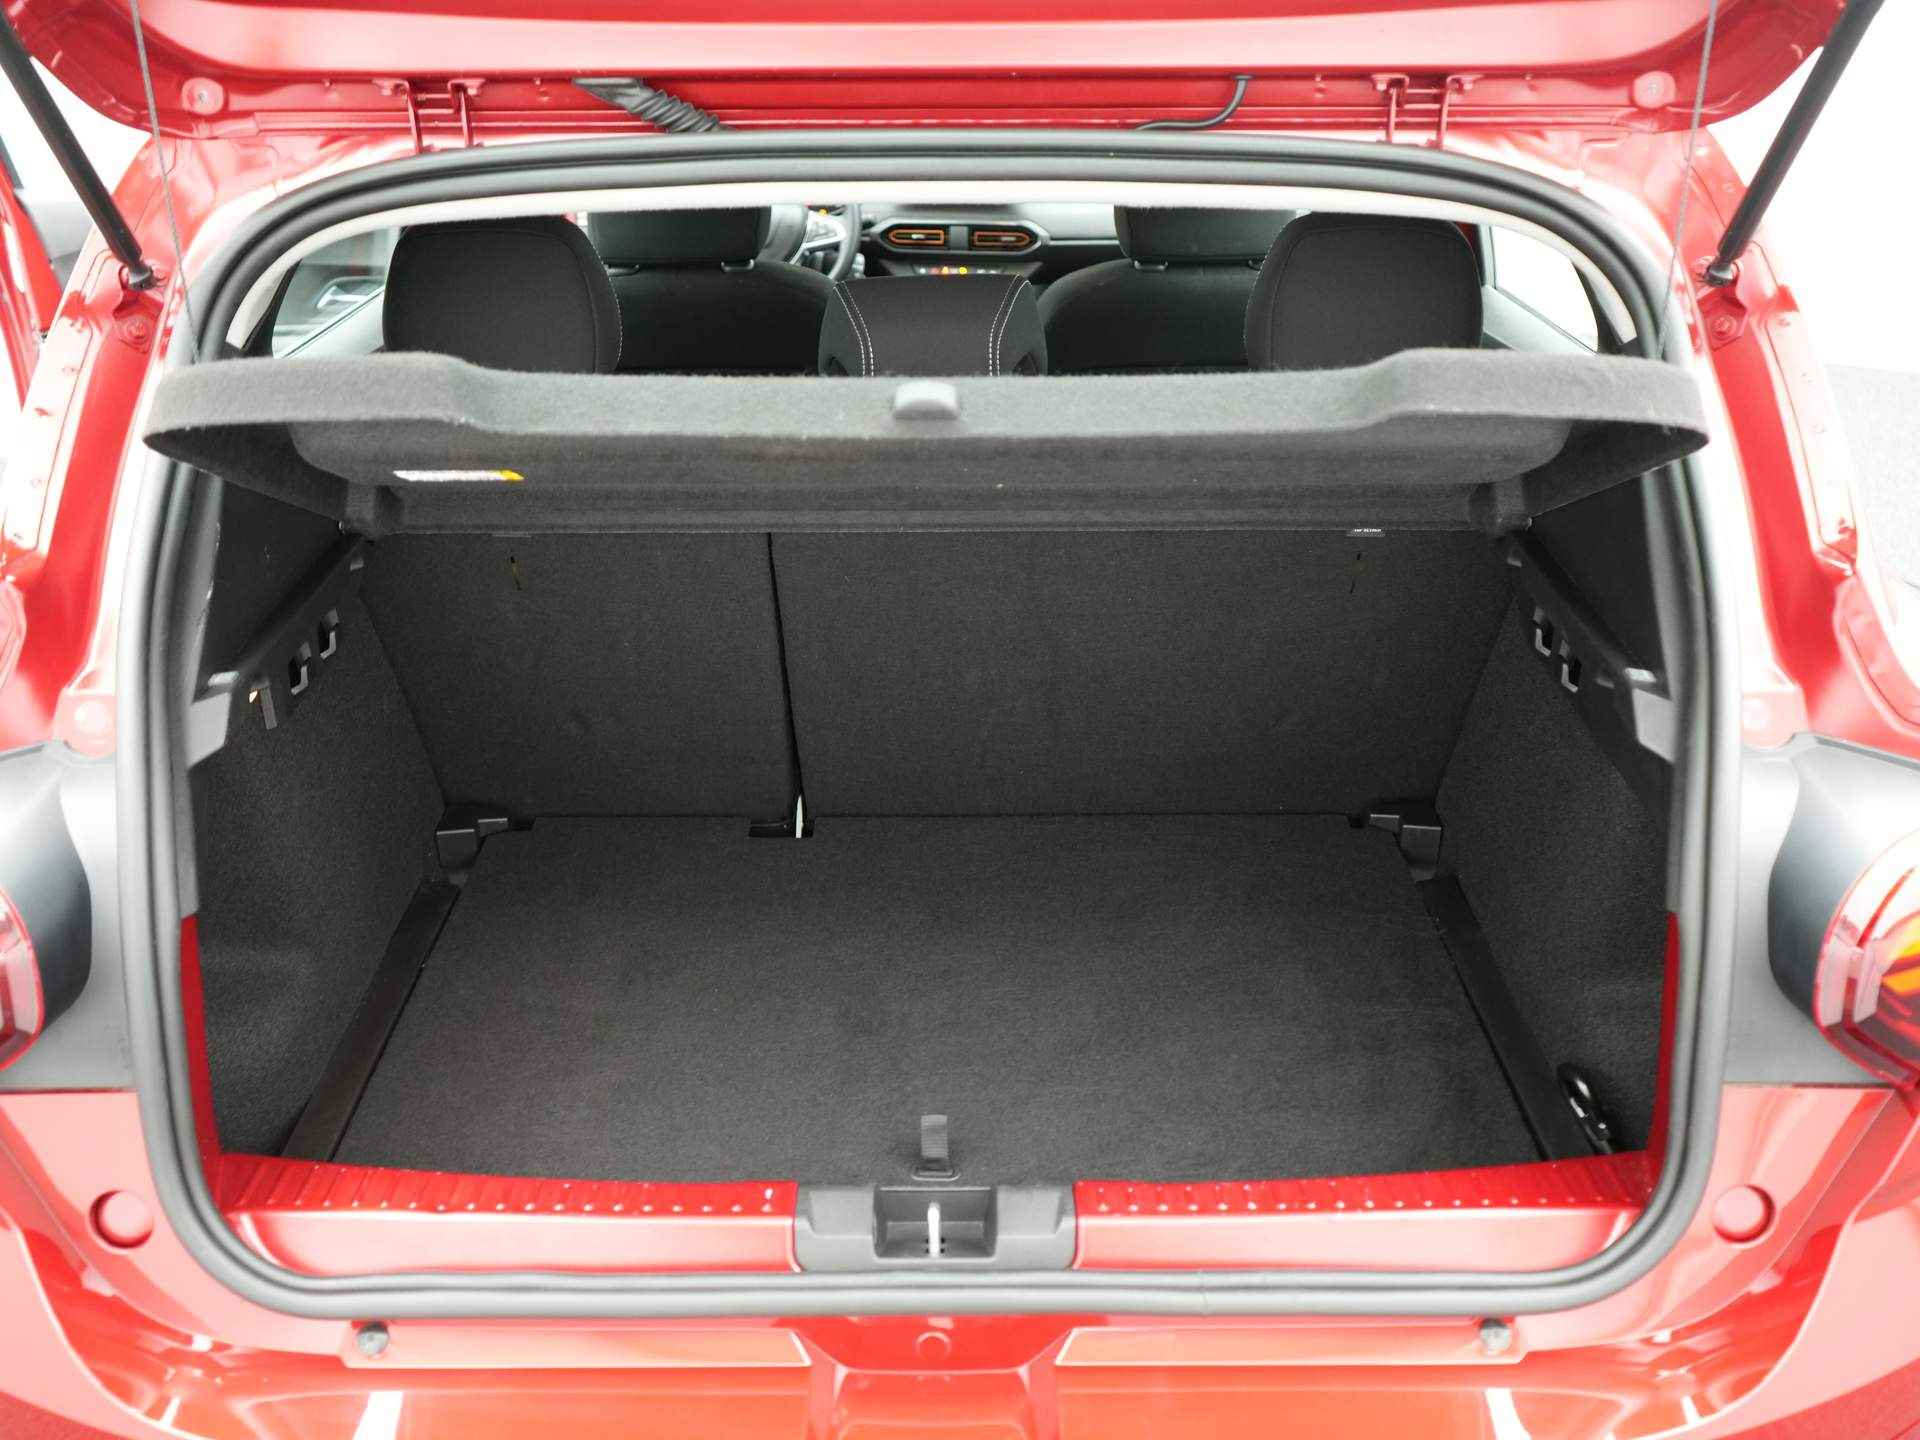 Dacia SANDERO Stepway 1.0 TCe 90 Comfort - Parkeersensoren achter- - 23/24